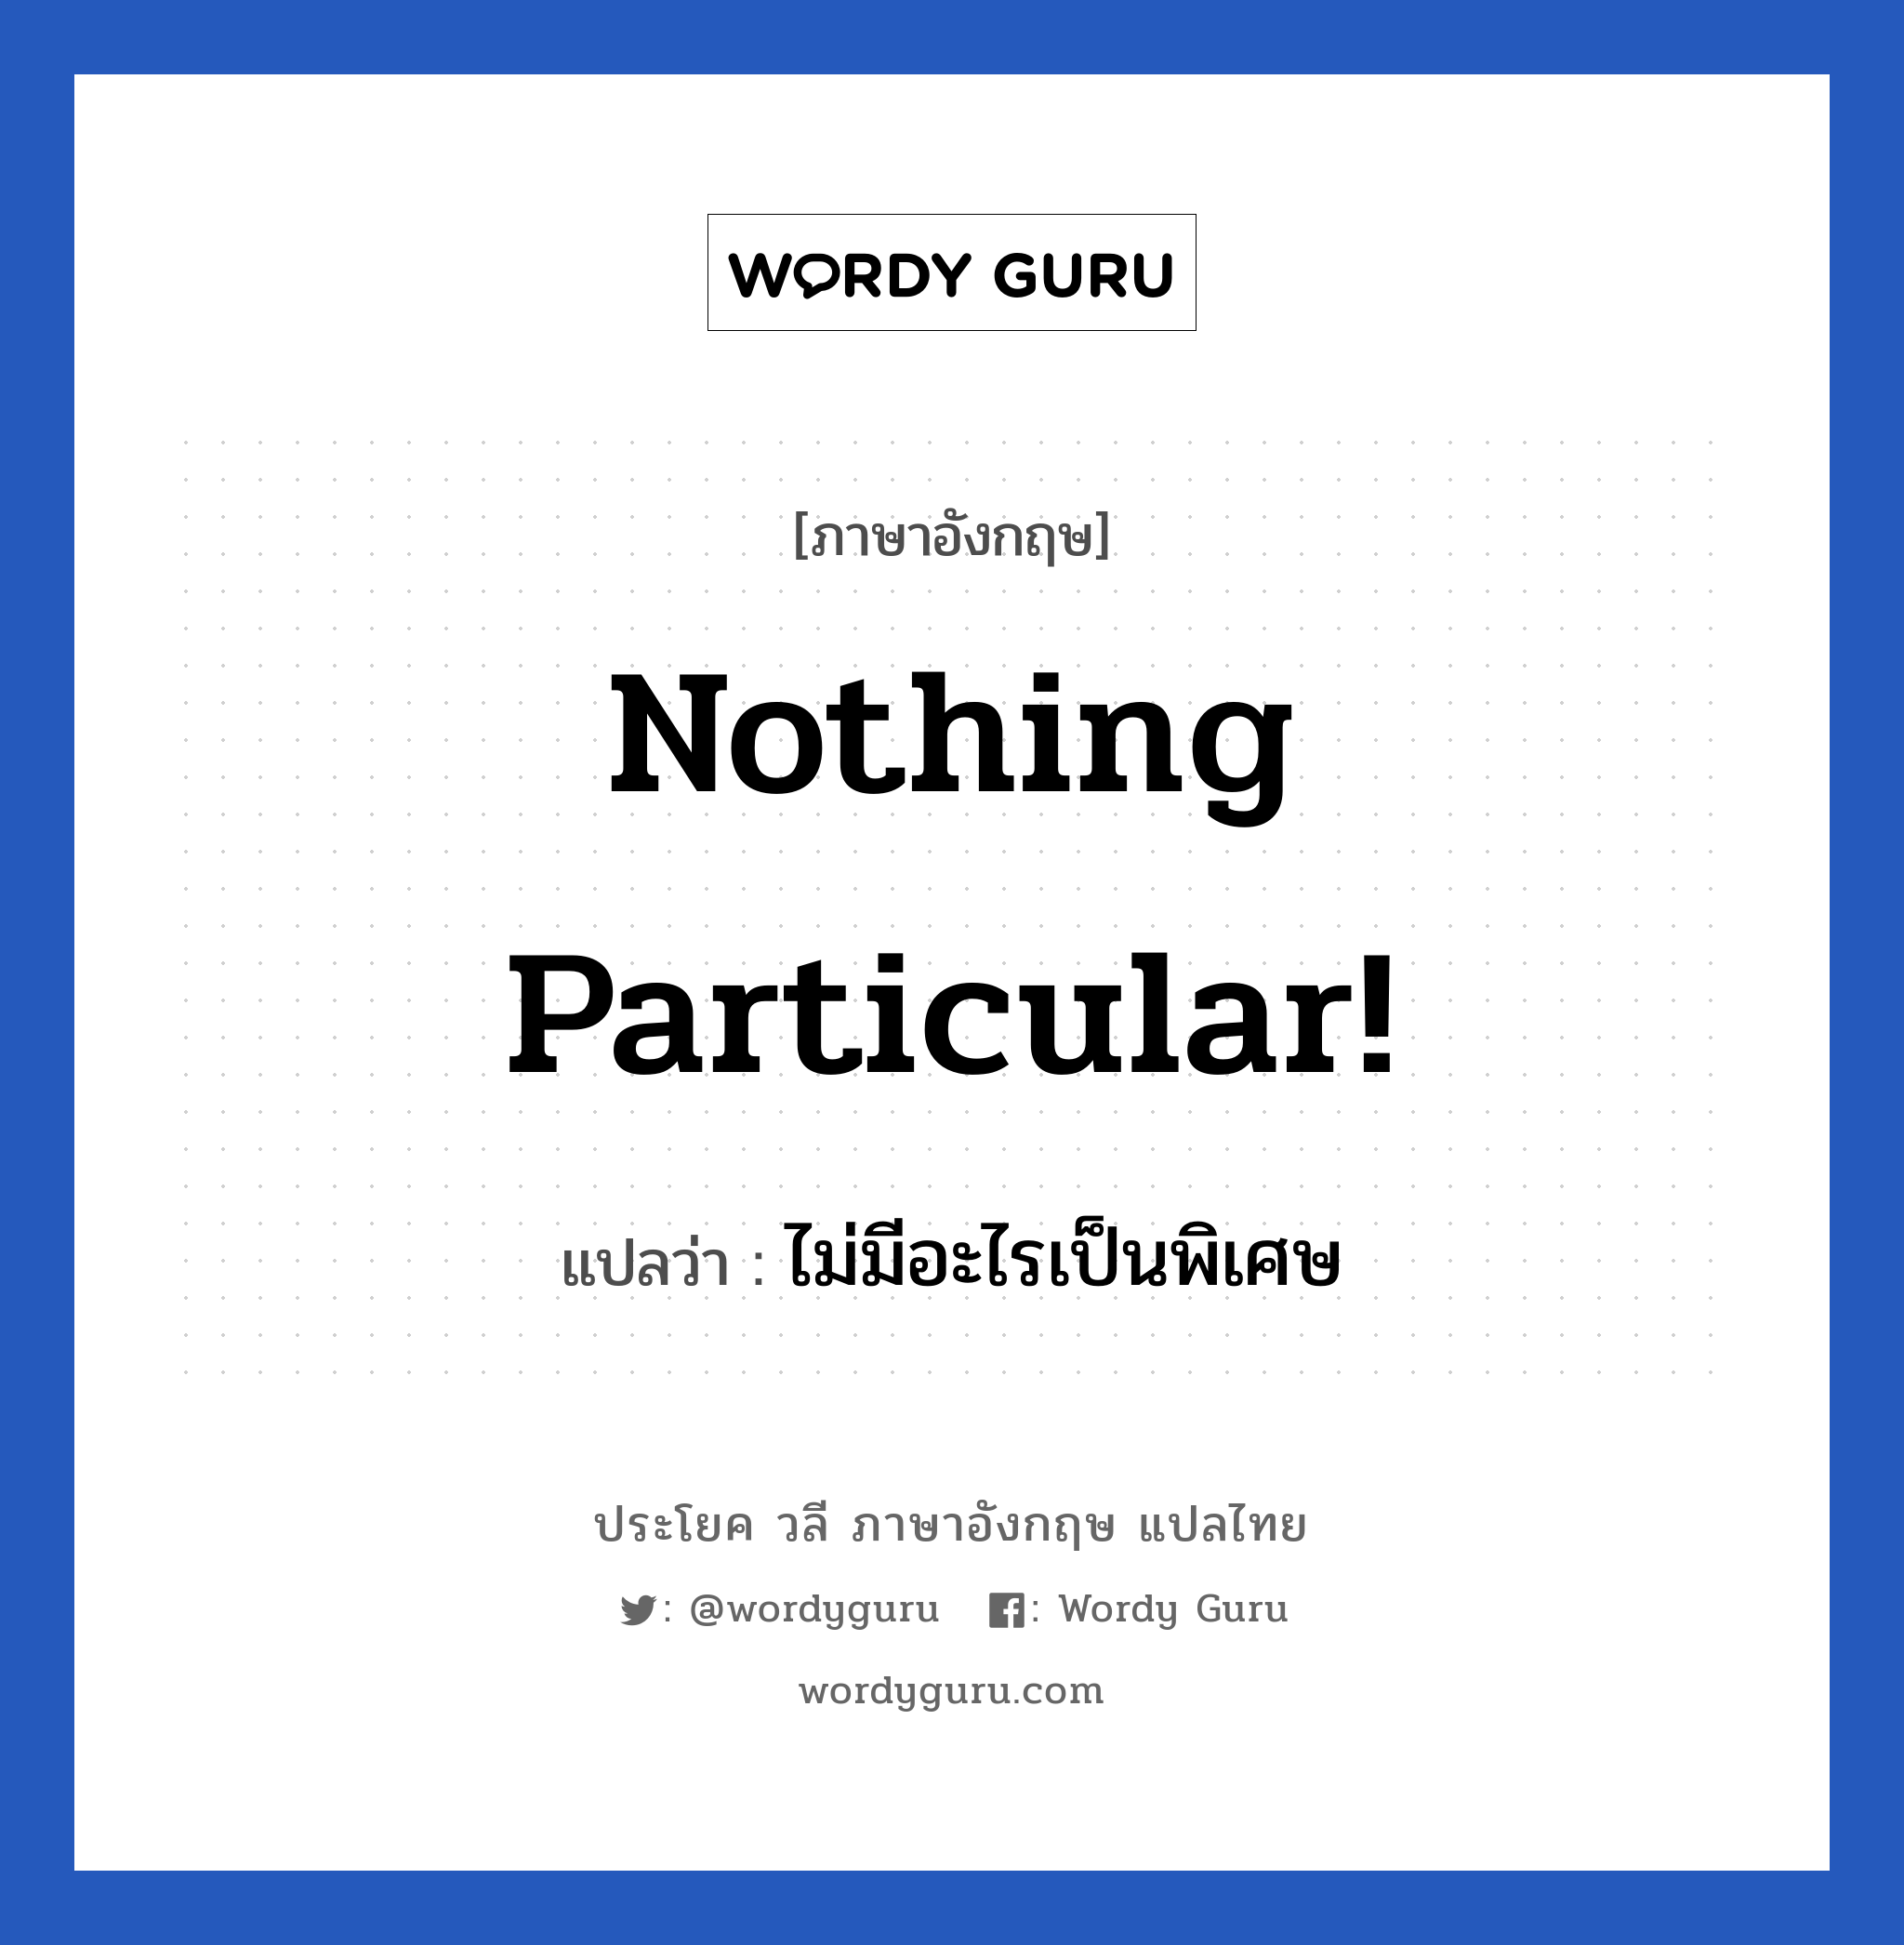 ไม่มีอะไรเป็นพิเศษ ภาษาอังกฤษ?, วลีภาษาอังกฤษ ไม่มีอะไรเป็นพิเศษ แปลว่า Nothing particular!